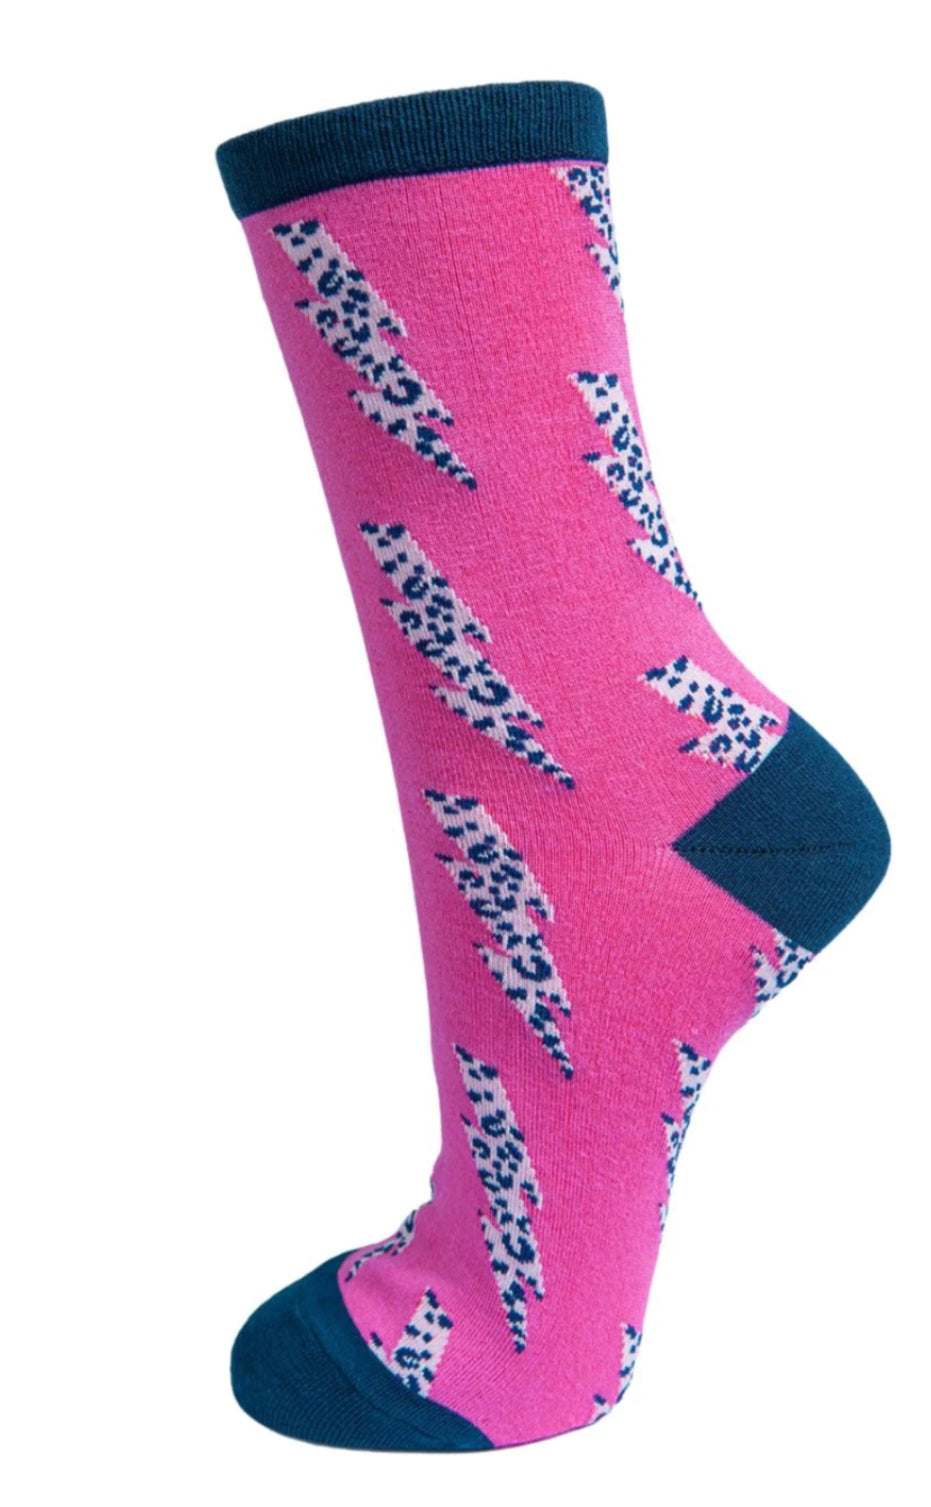 Womens Bamboo Socks Leopard Print Ankle Socks Lightning Bolt Pink